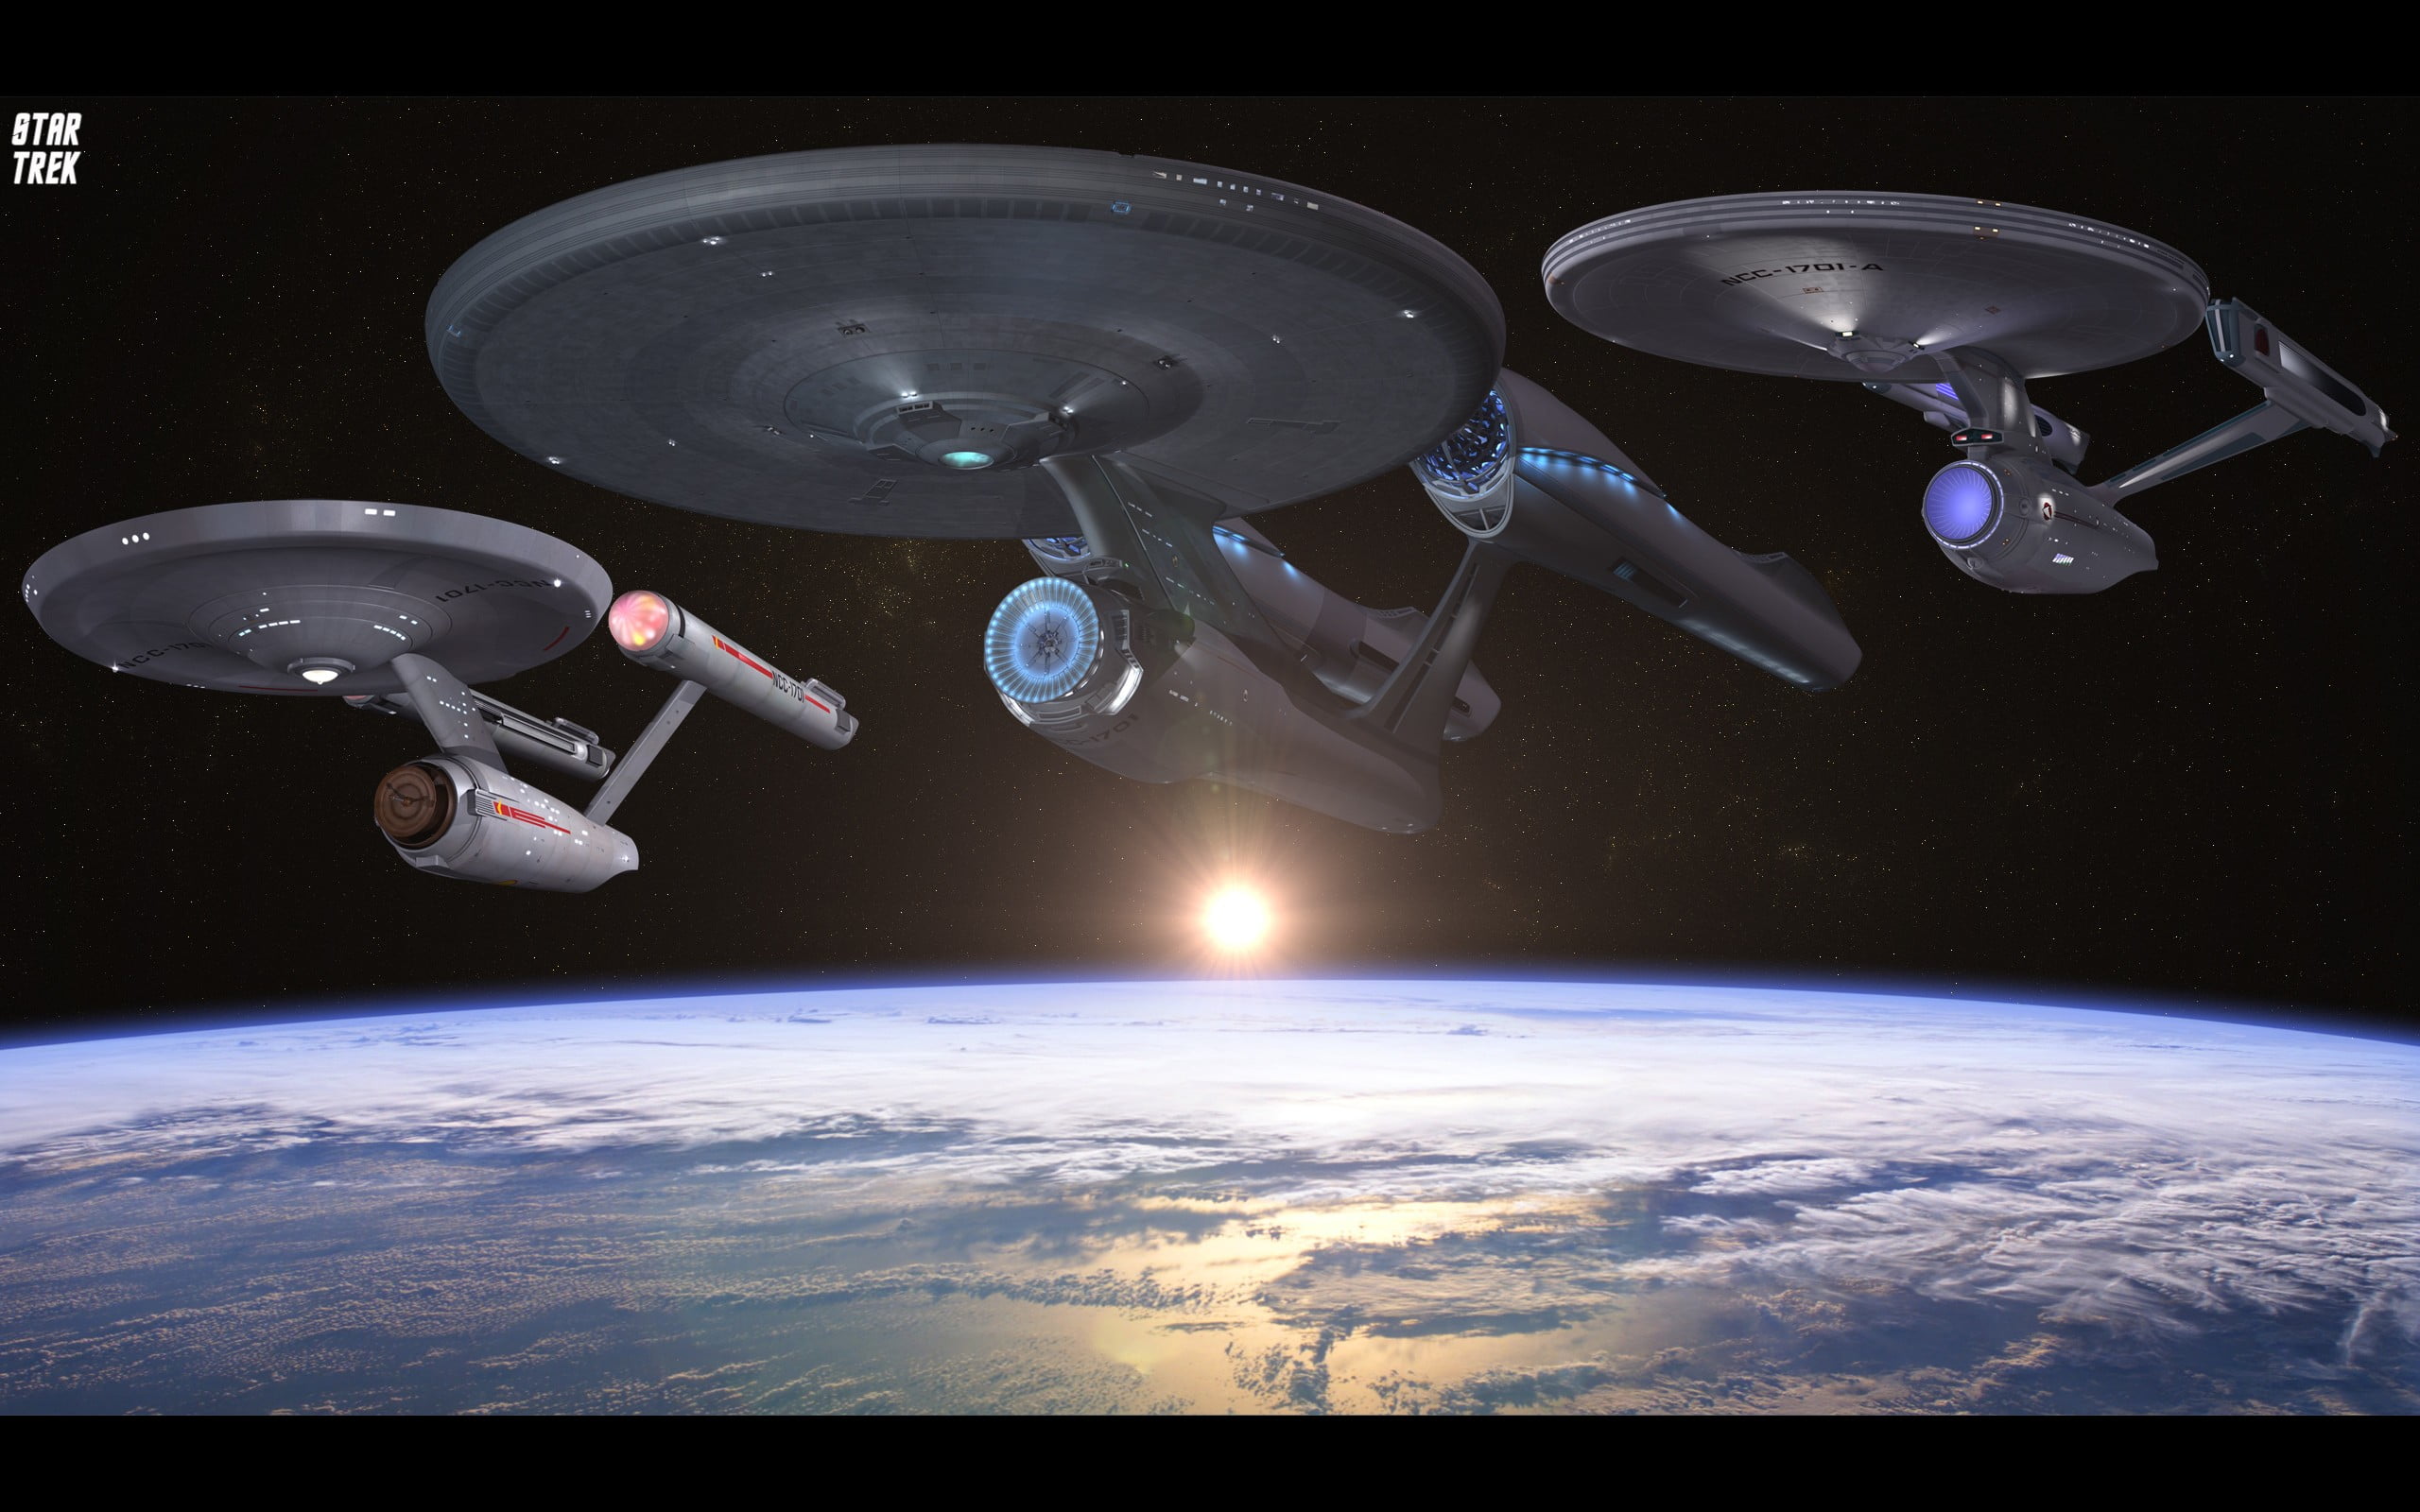 Star Trek movie still, Star Trek, USS Enterprise (spaceship), space, Earth